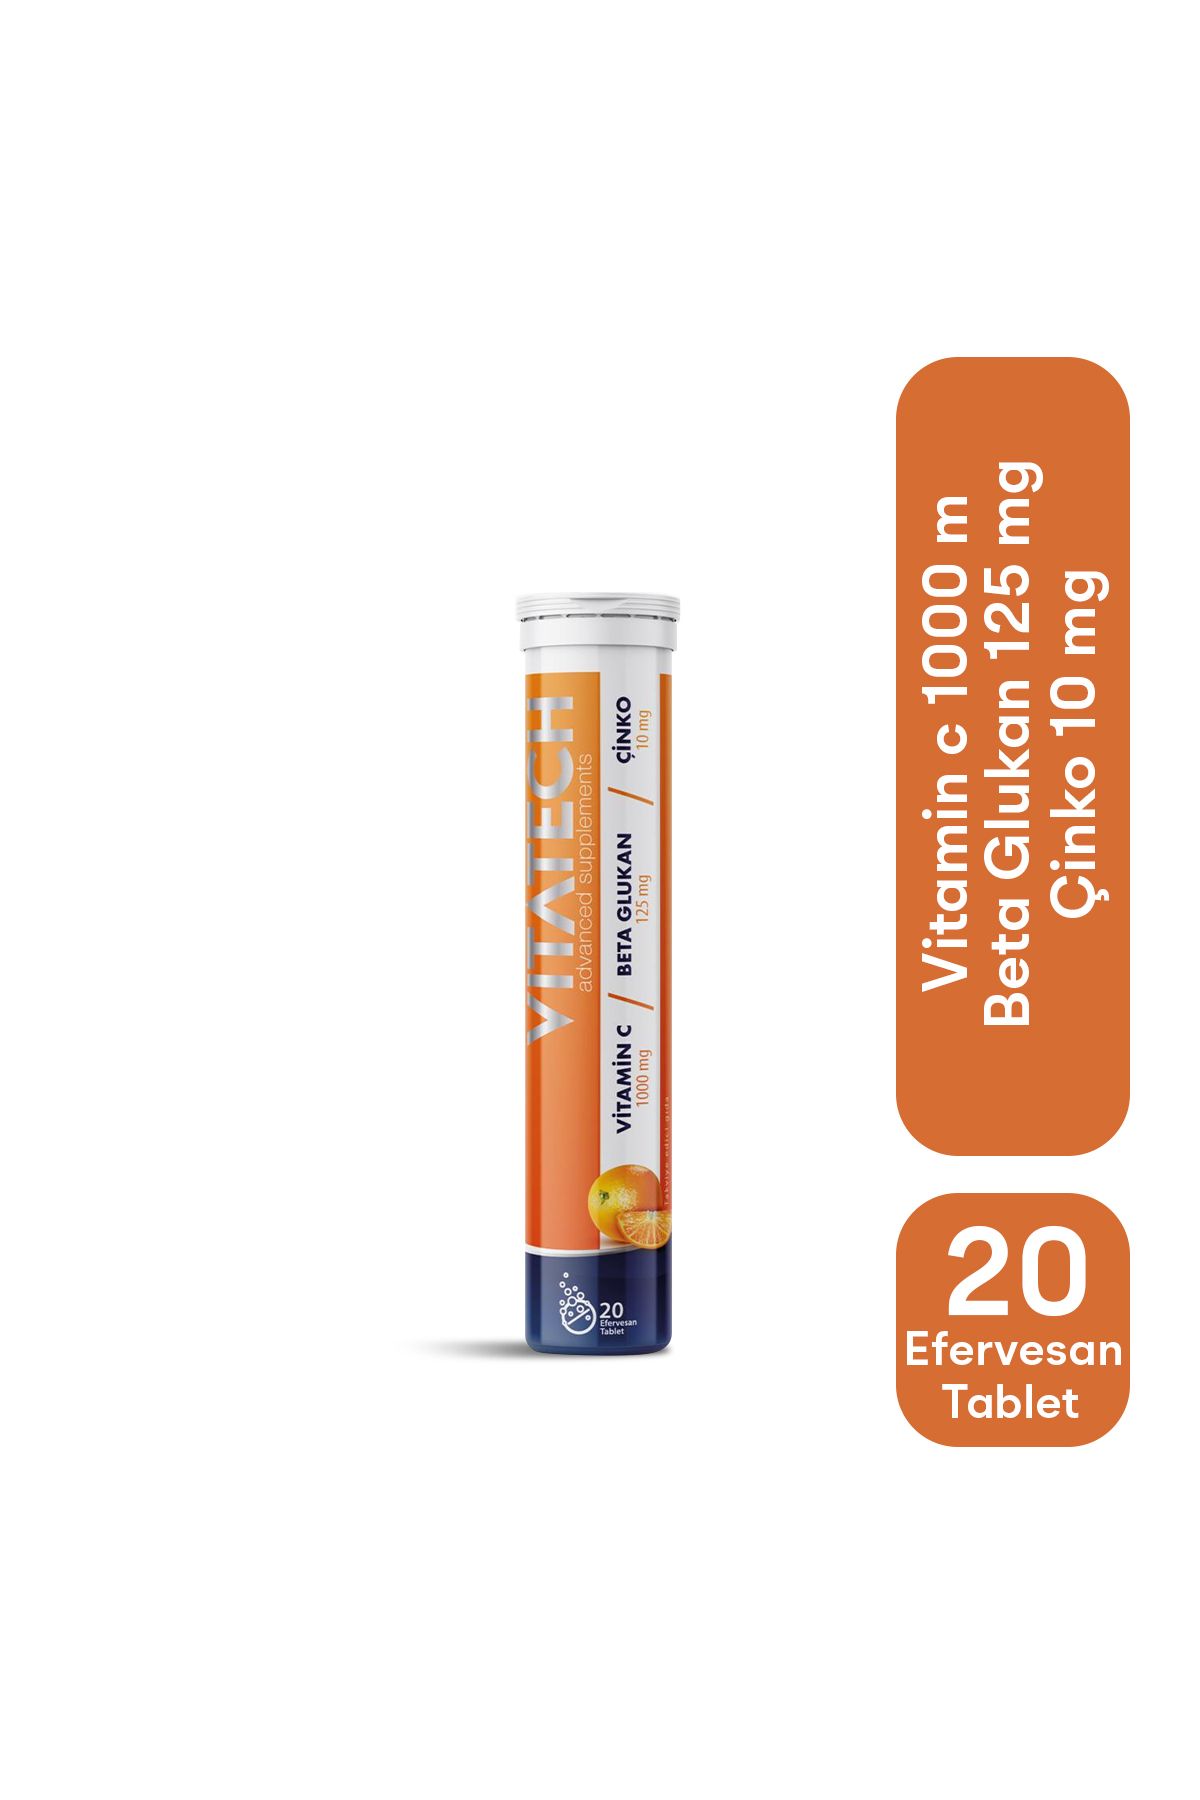 VITATECH 3in1 Vitamin C + Beta Glukan + Çinko 20 Efervesan Tablet